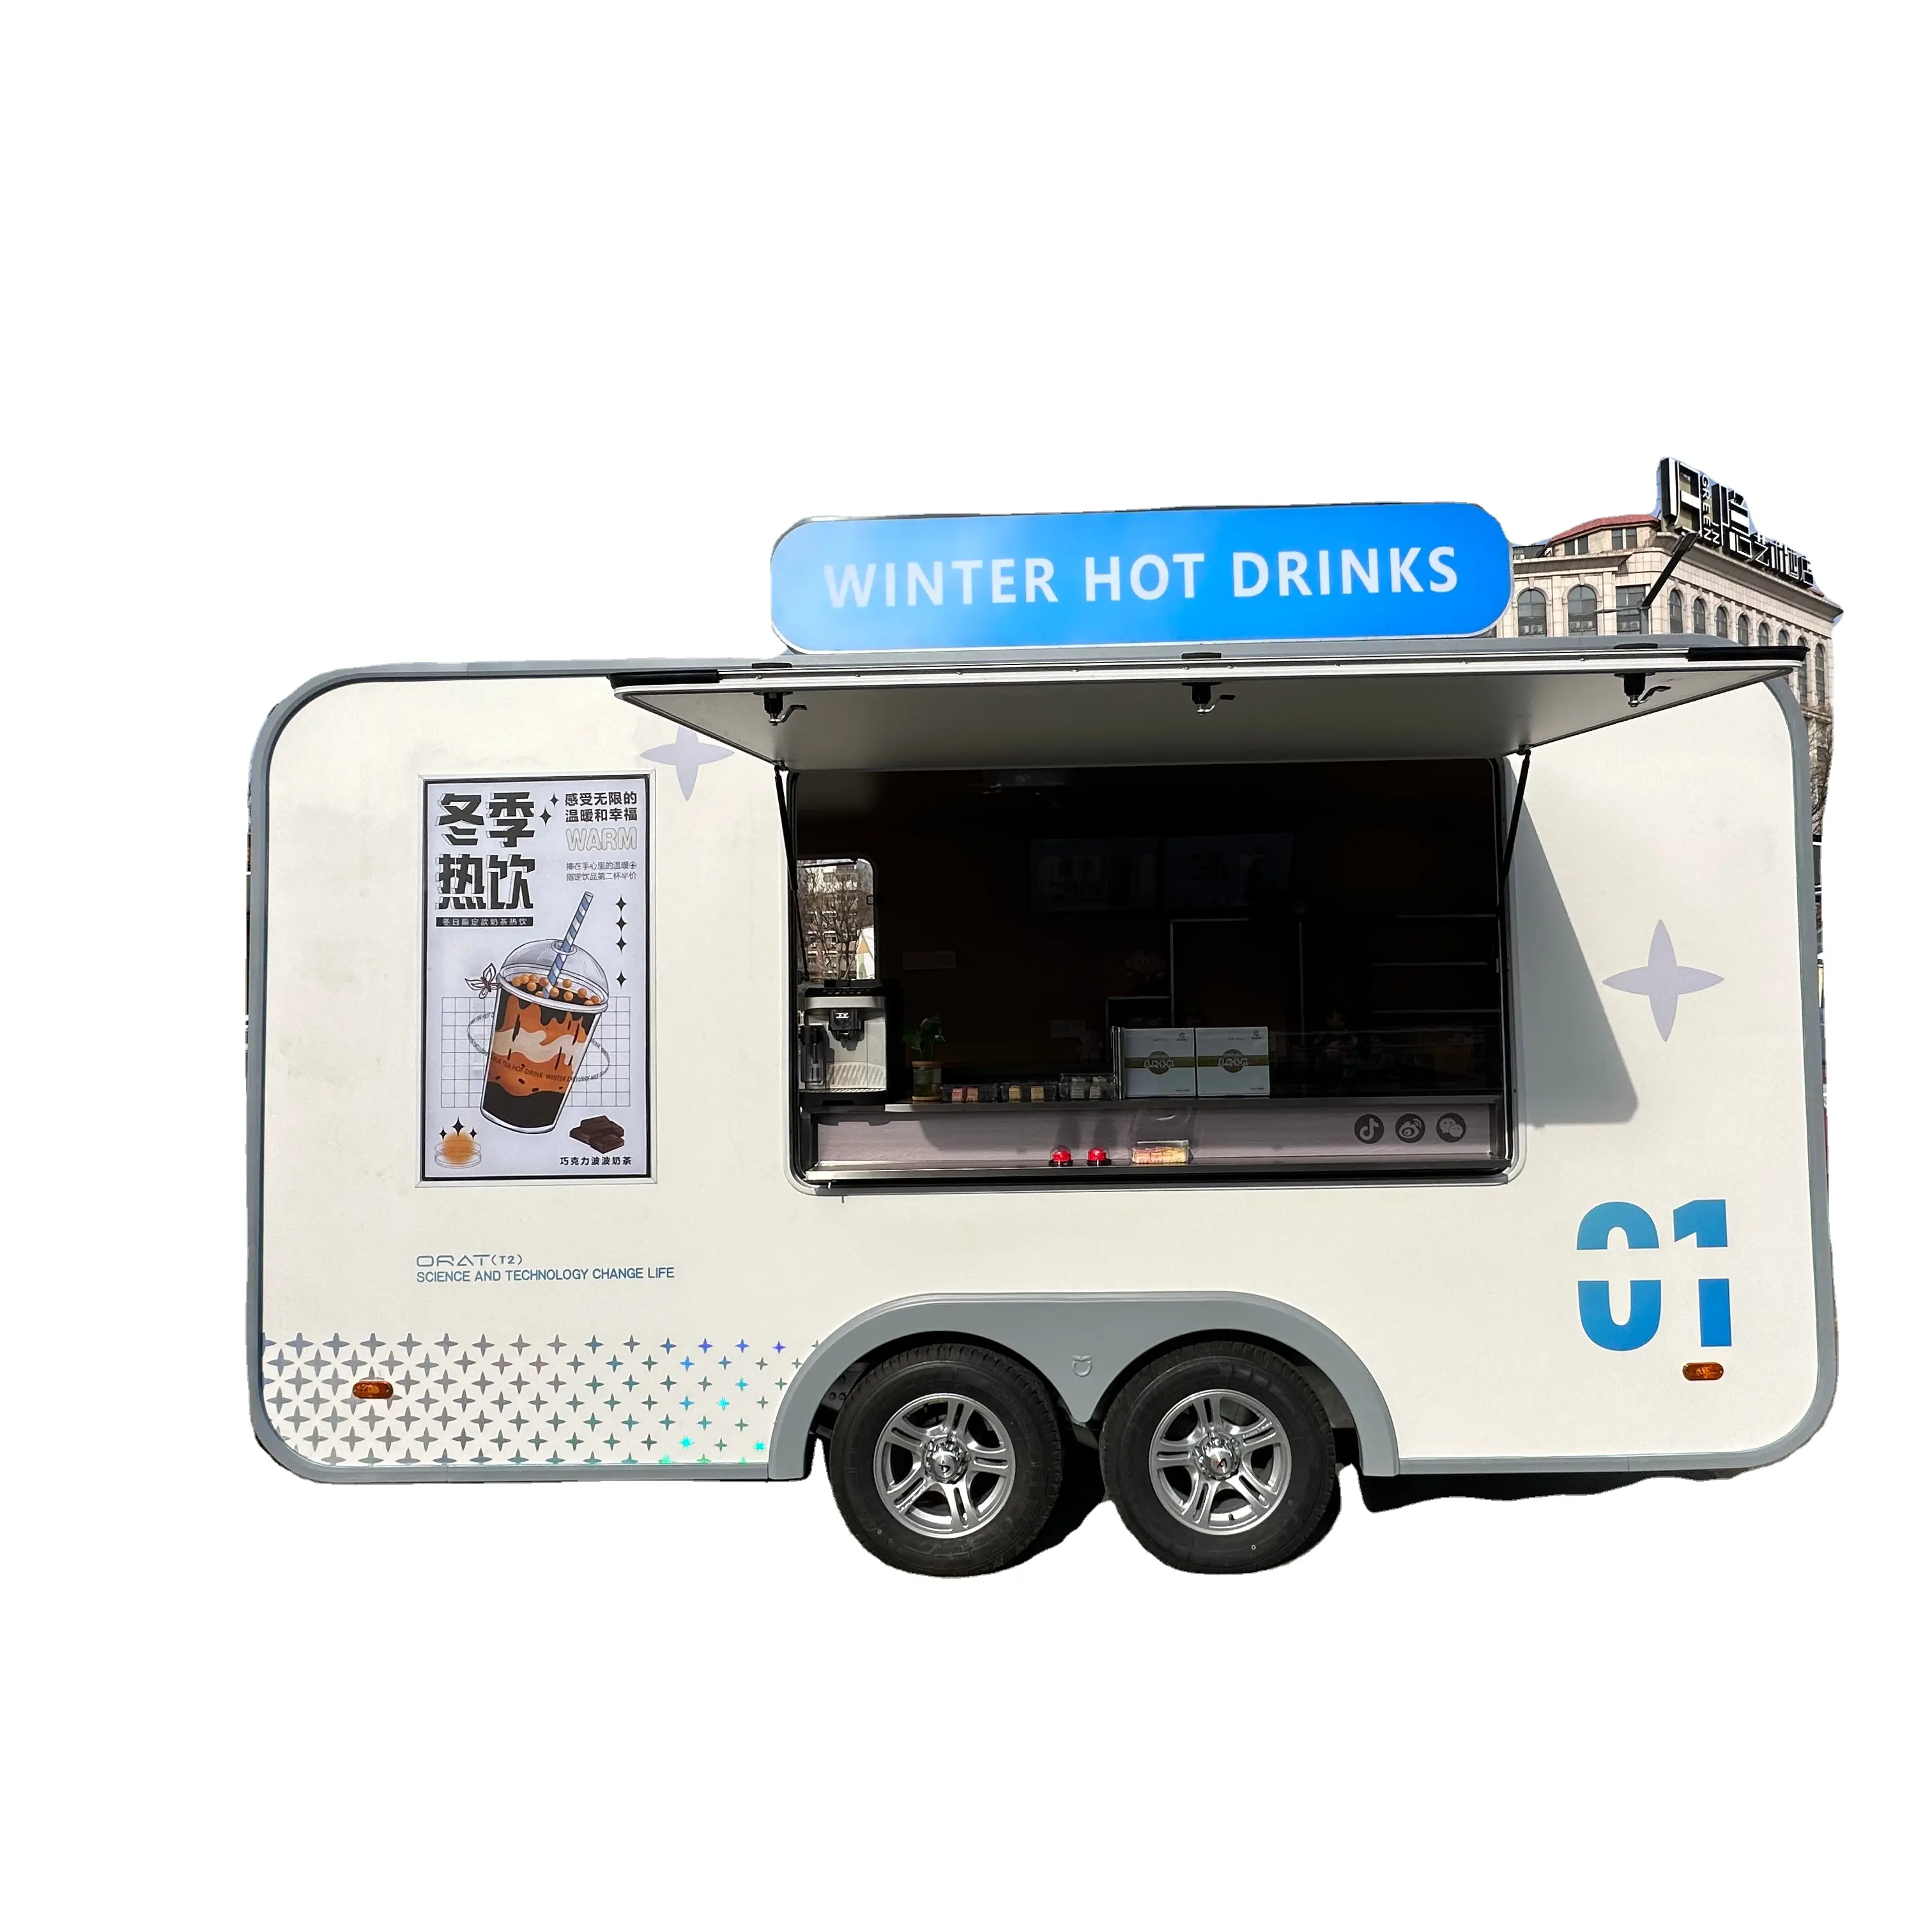 Attrezzatura da cucina completa personalizzata Hot dog per Hamburger cibo rimorchio Mobile cucina Food truck